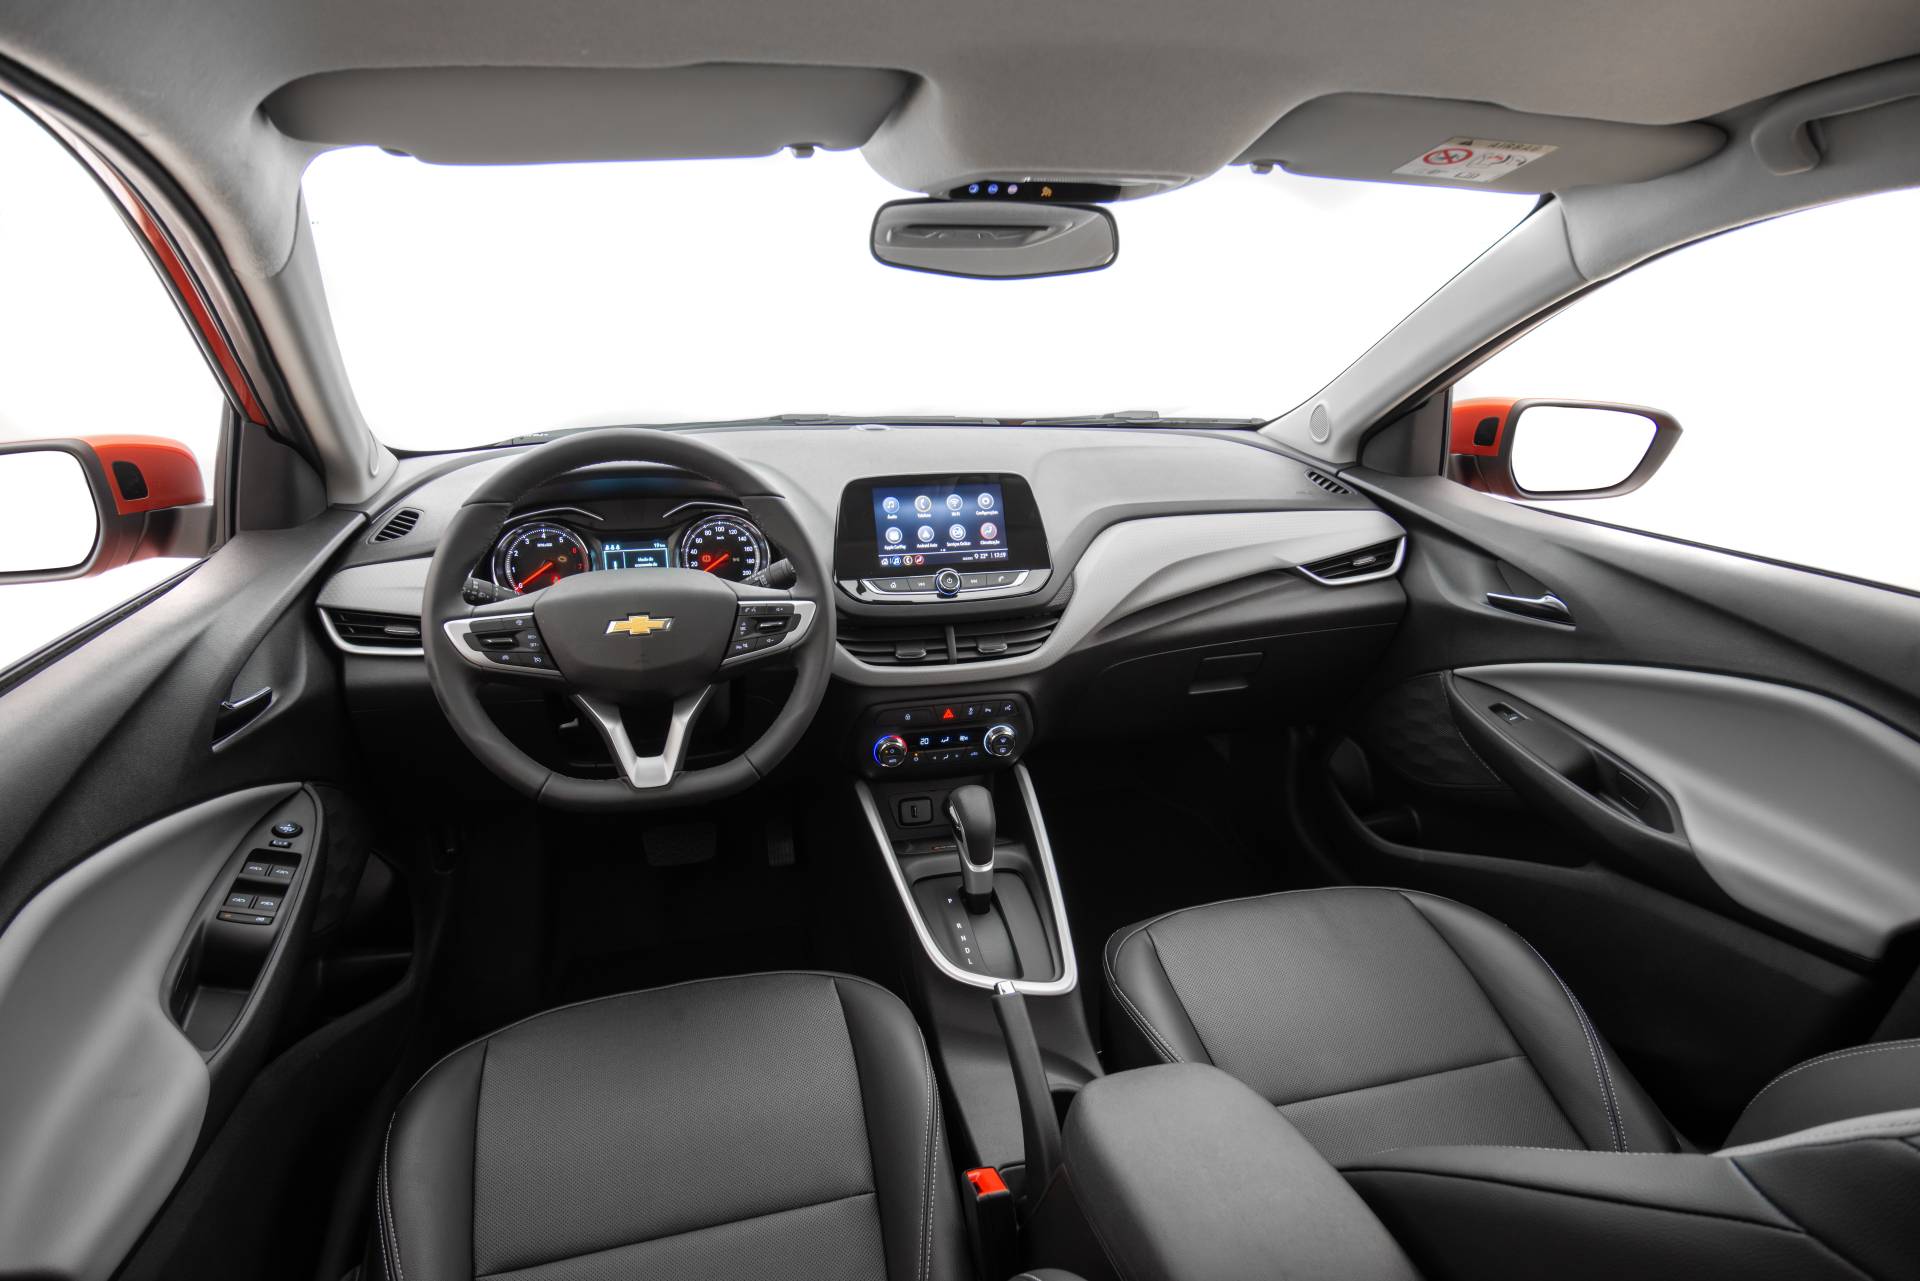 Chevrolet Onix 2015 Modelo 3D - Baixar Veículos no